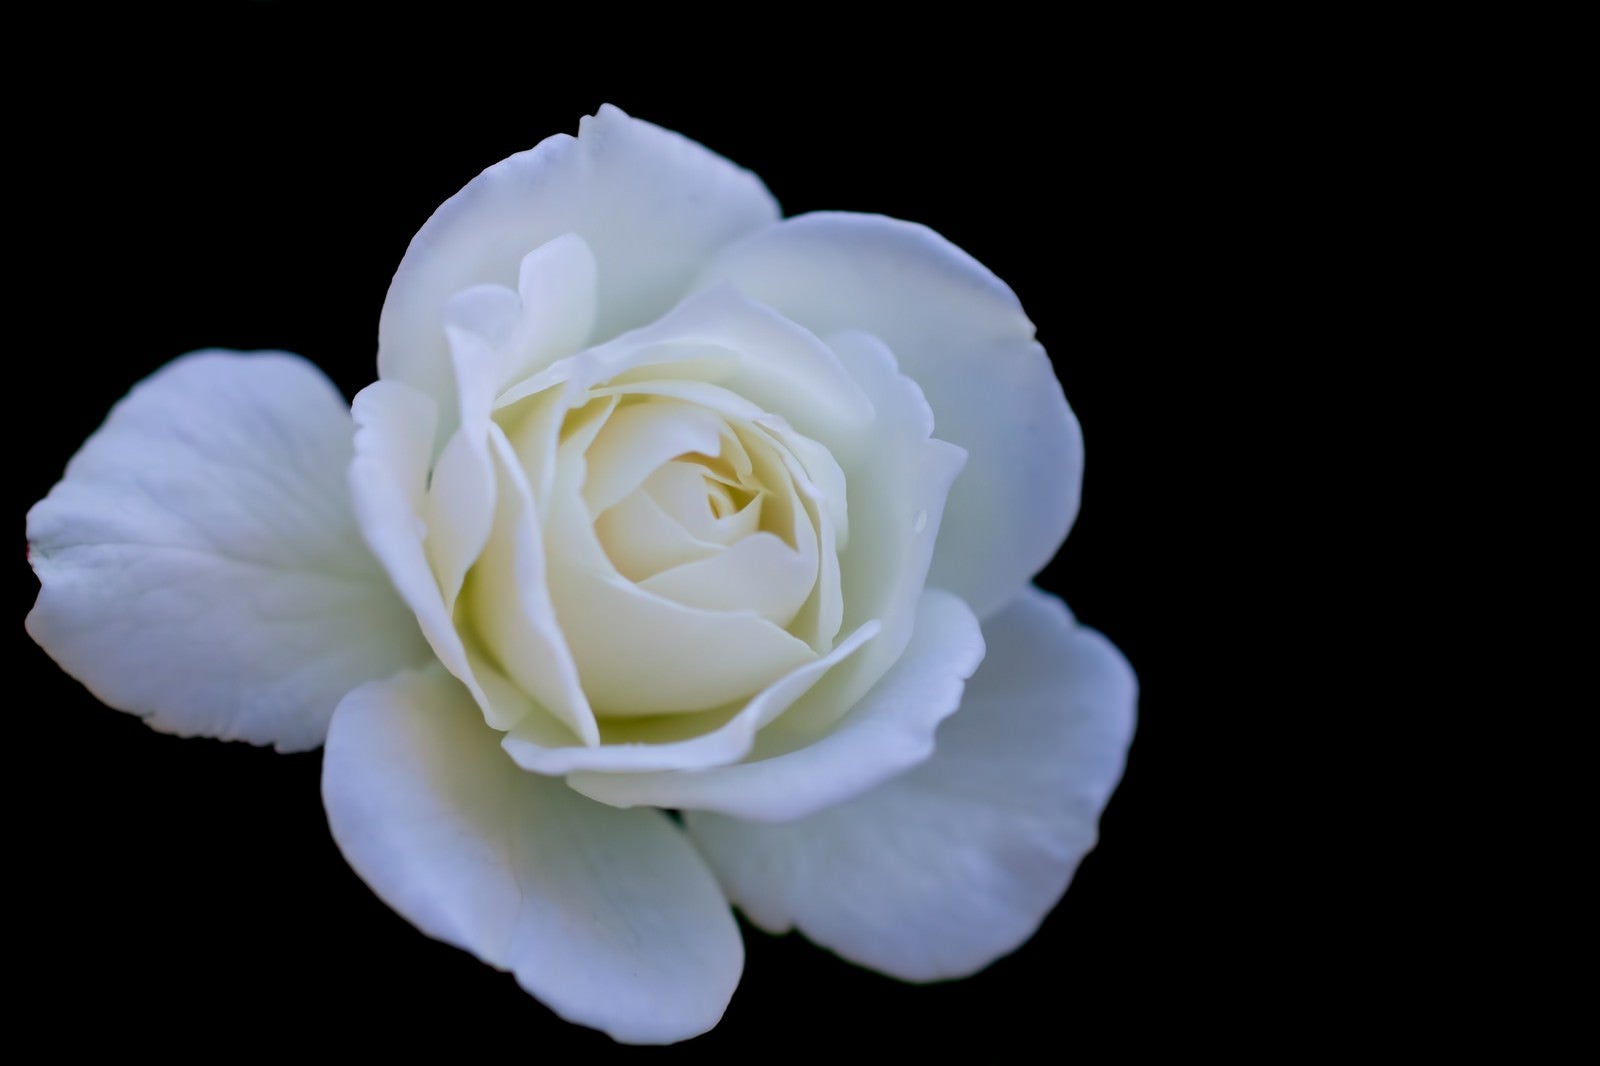 「シュネービッチェンの薔薇」の写真